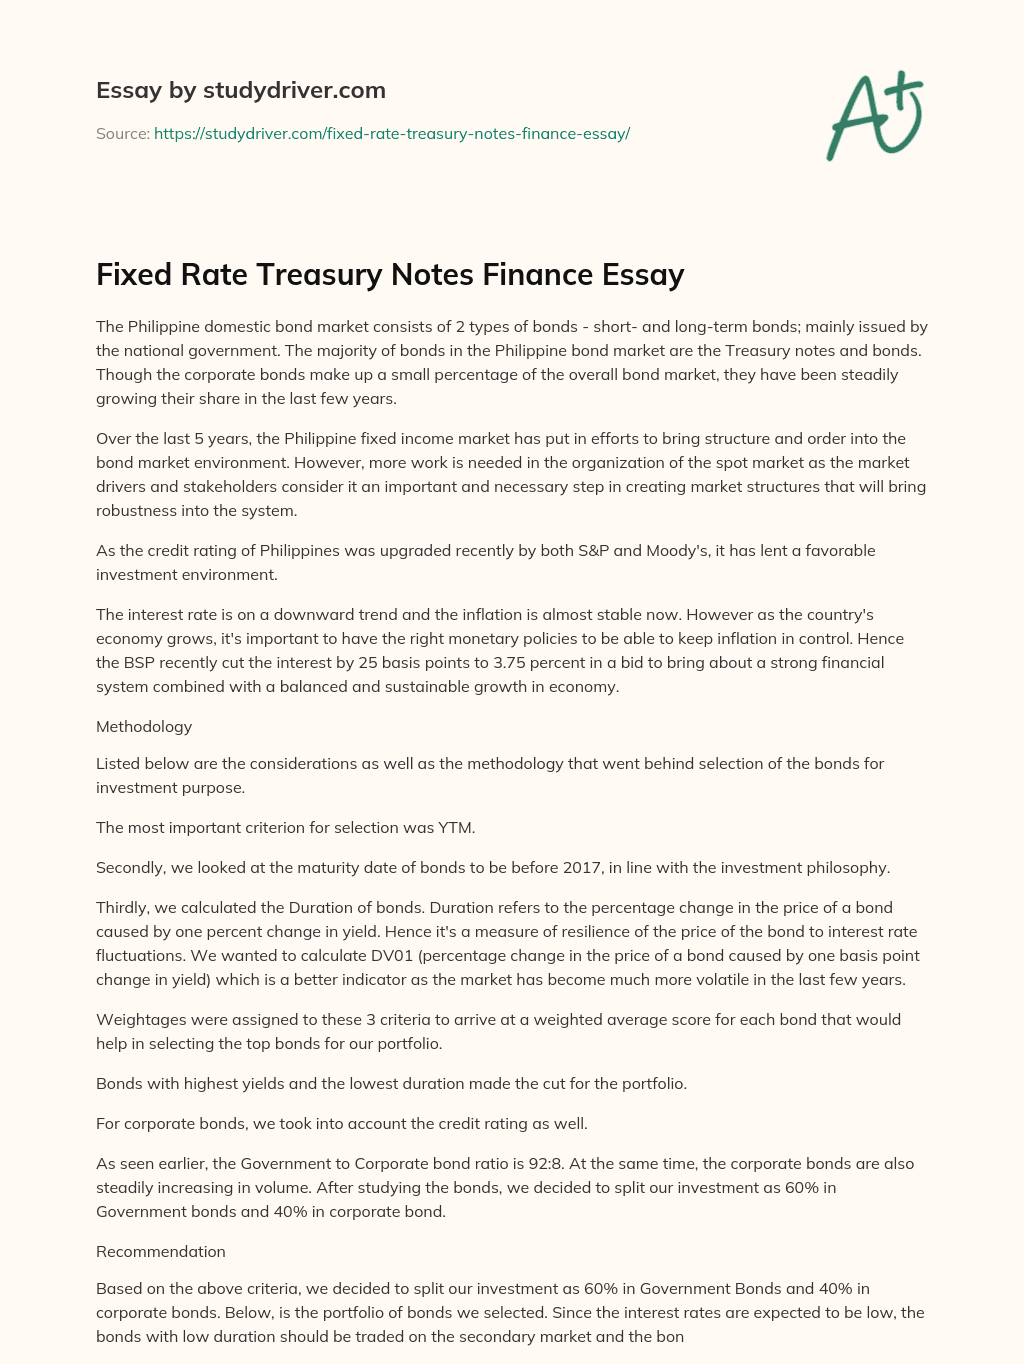 Fixed Rate Treasury Notes Finance Essay essay